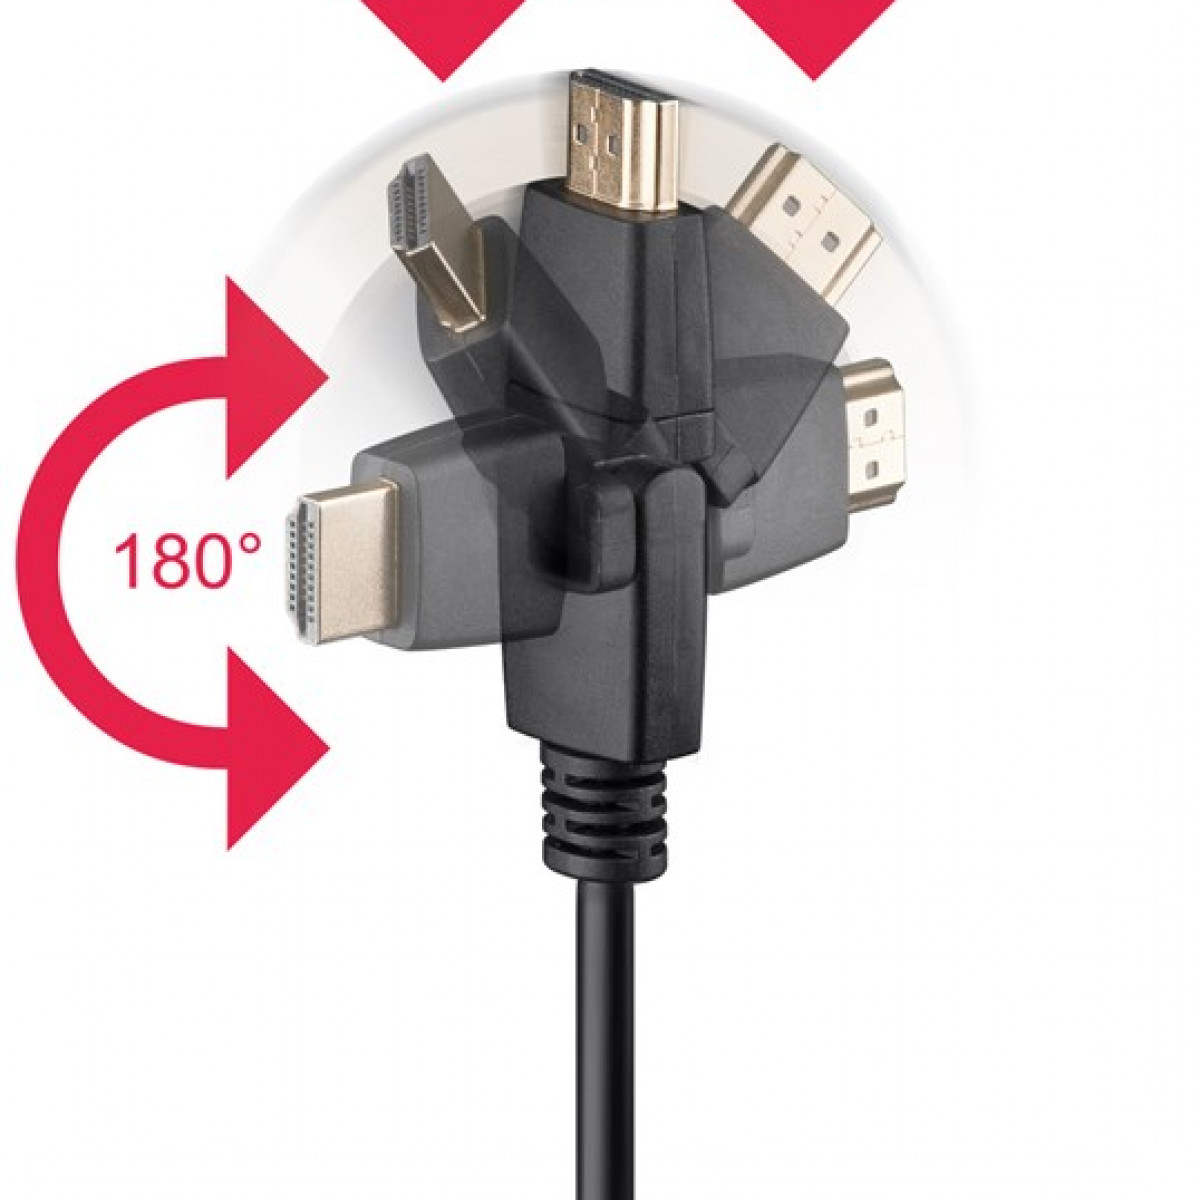 HDMI Ethernet High-Speed-HDMI™-360°-Kabel GOOBAY Kabel mit